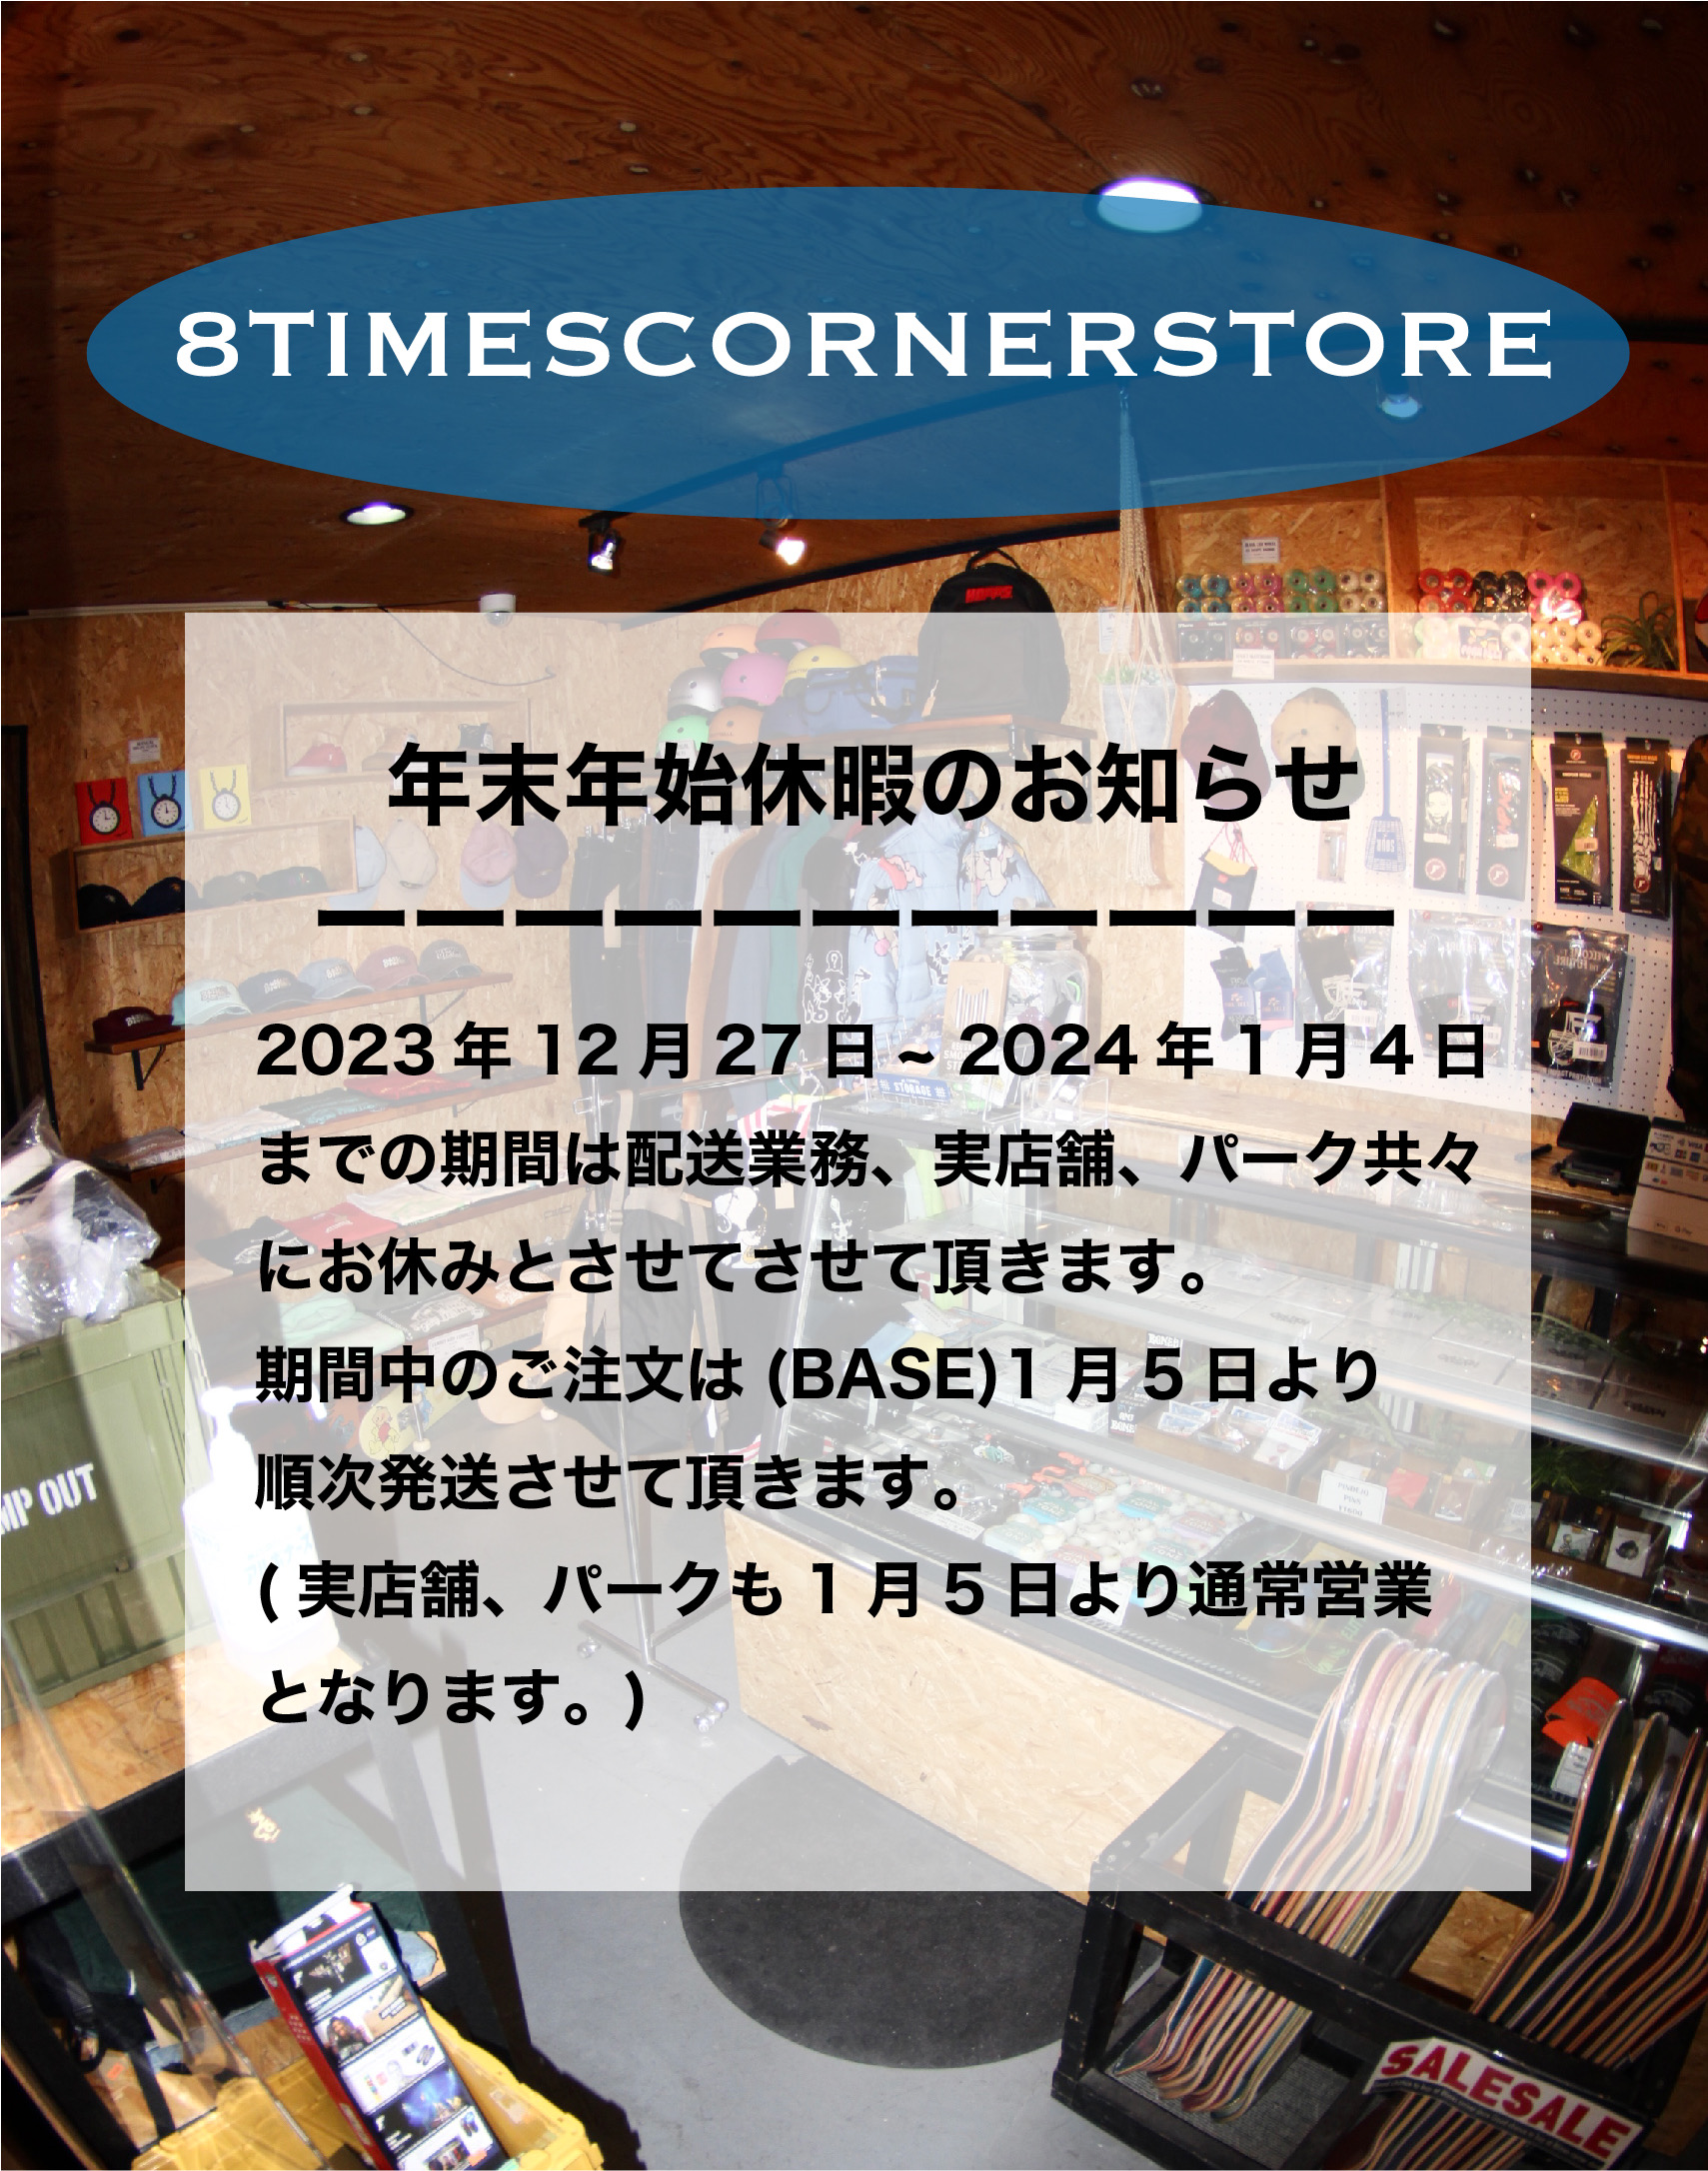 【8TIMES CONER STORE】より年末年始休暇のお知らせ。